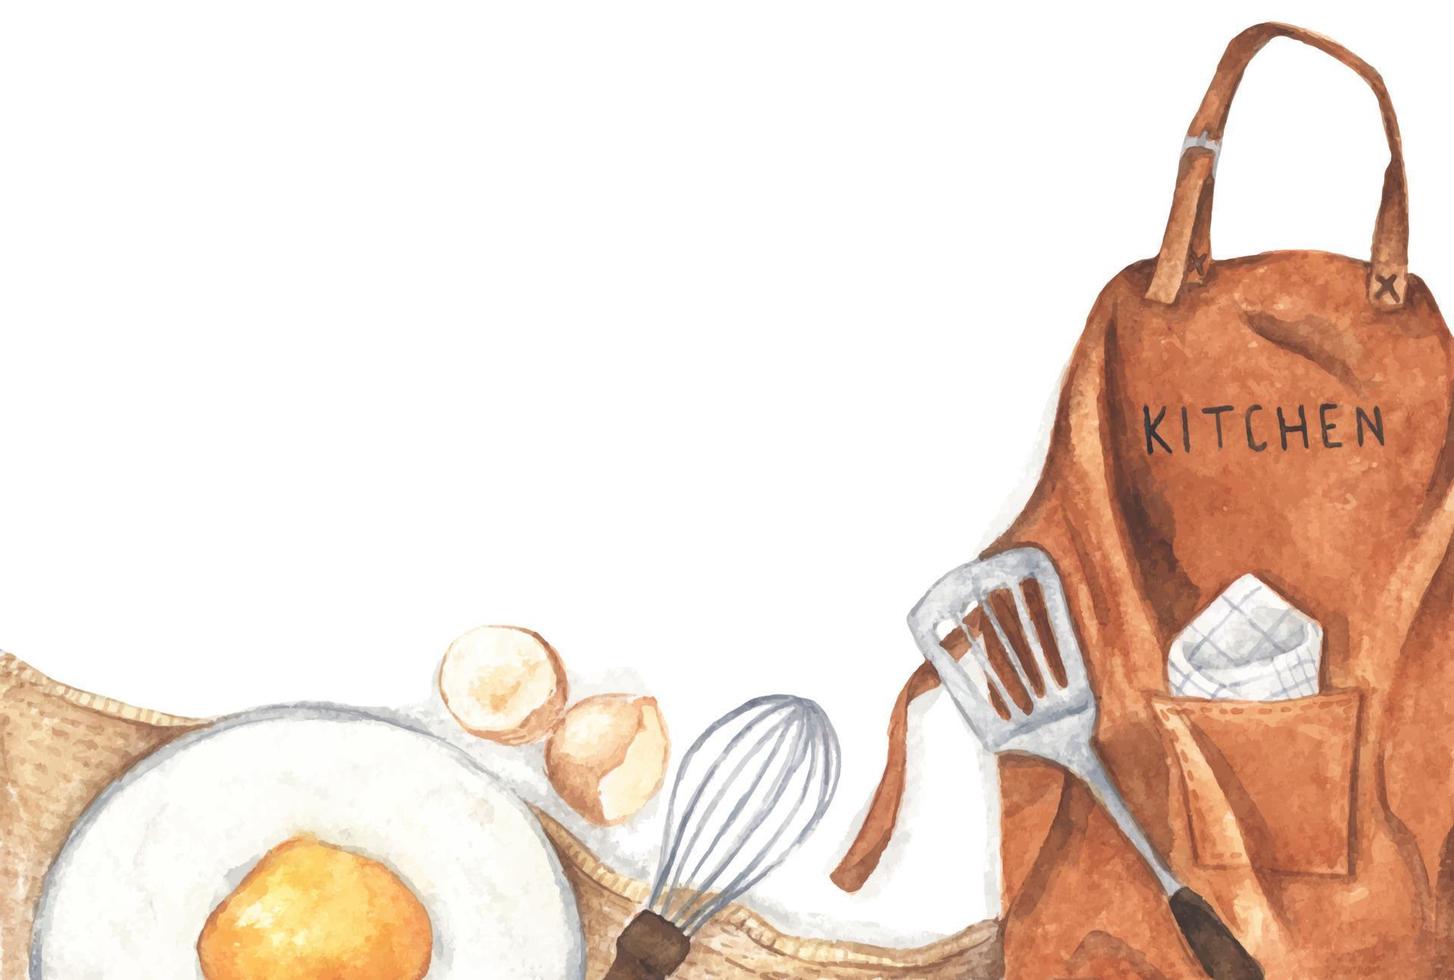 bakning eller matlagning bakgrund med köksredskap, mjöl, ägg och brunt förkläde. akvarell illustration. vektor